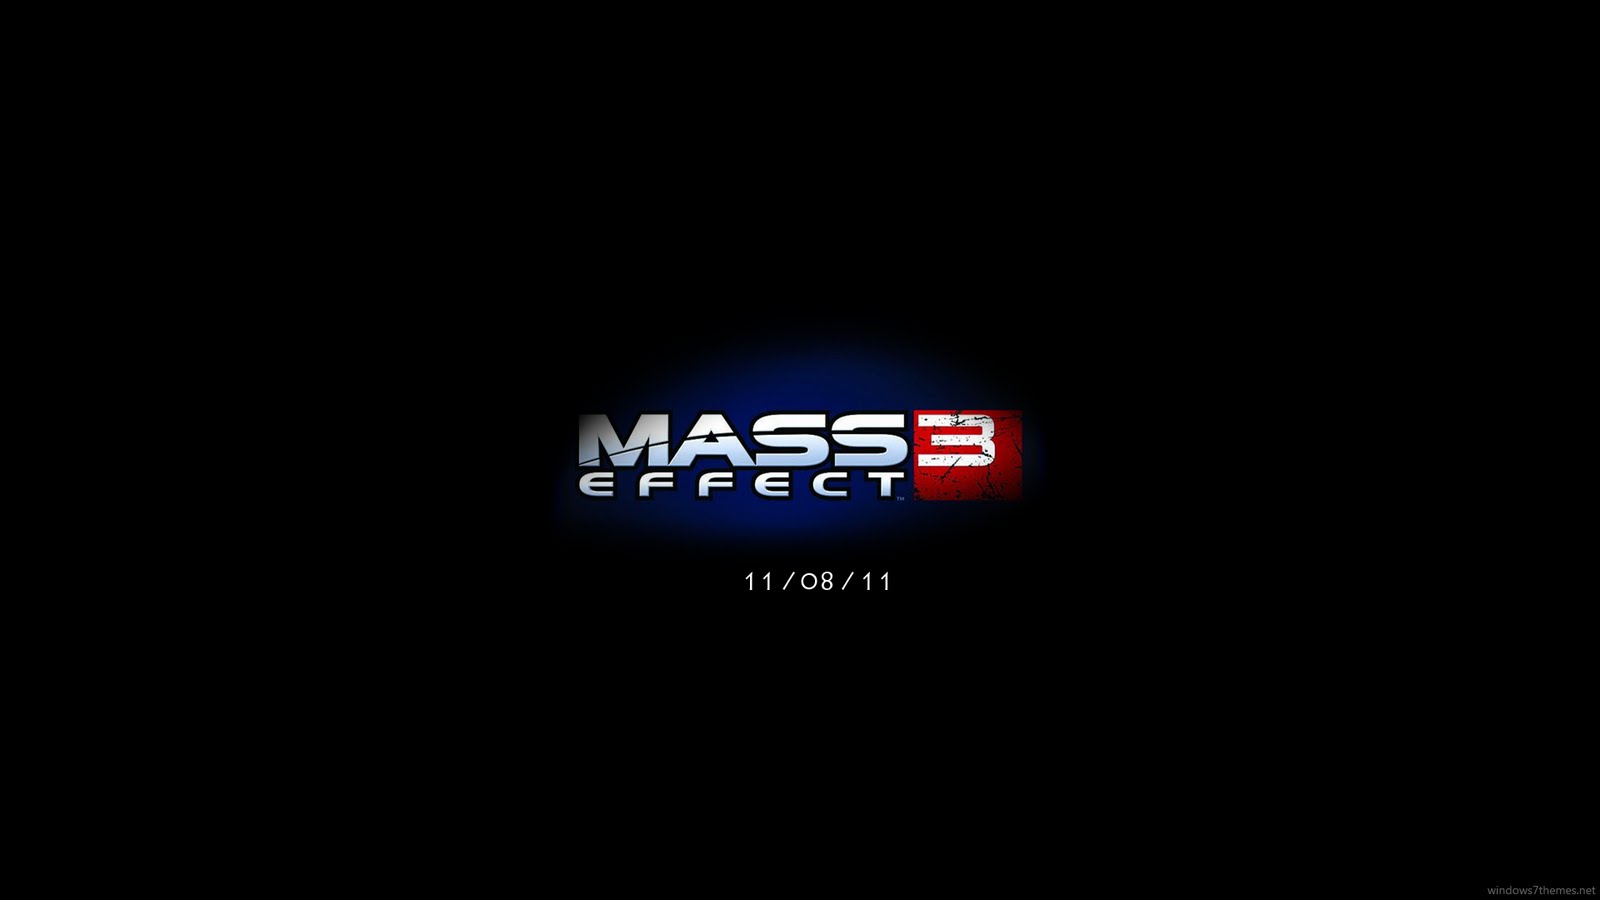 Mass Effect HD Wallpaper Nice Wd